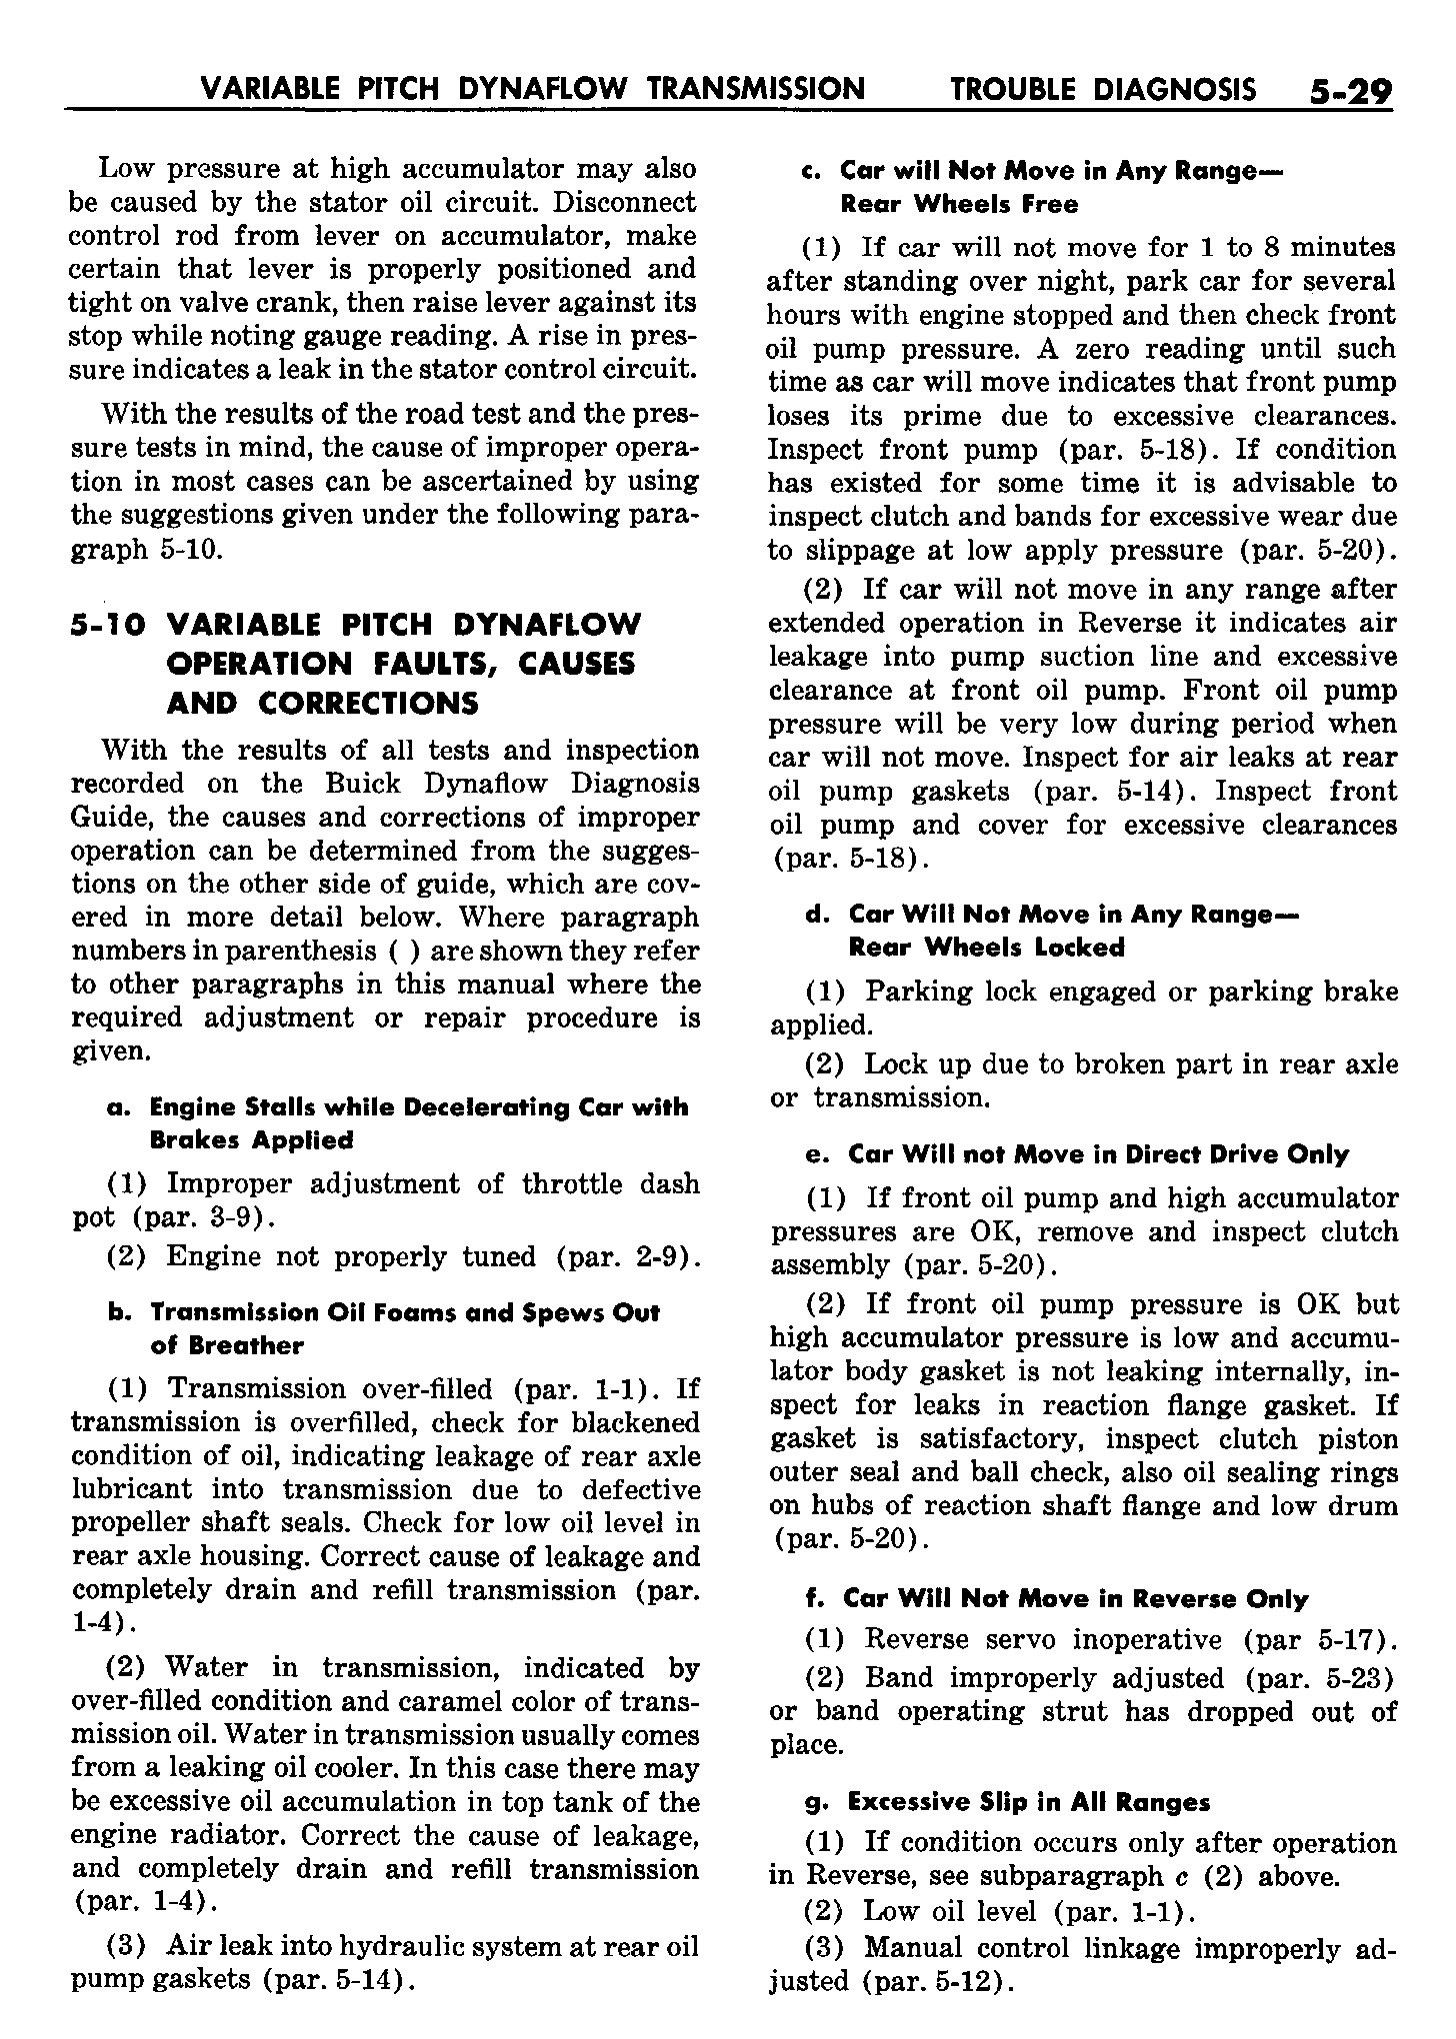 n_06 1958 Buick Shop Manual - Dynaflow_29.jpg